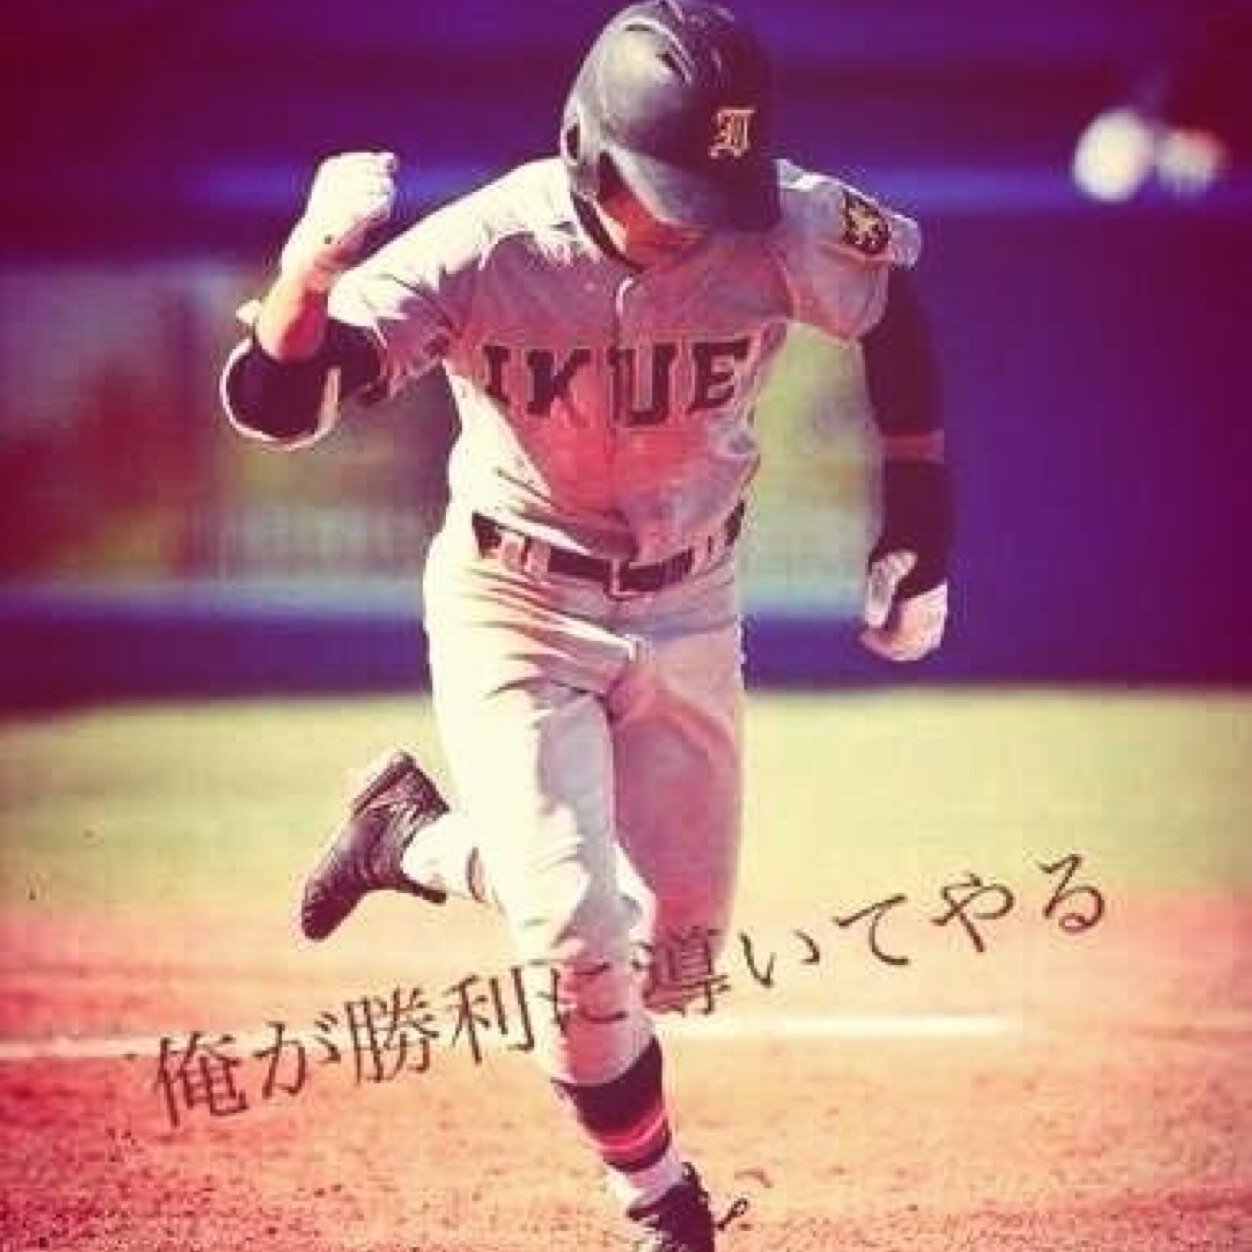 4月から三島南高校で野球やりますっ！
miwaファン 車大好き(*^^*)
よろしくっ！